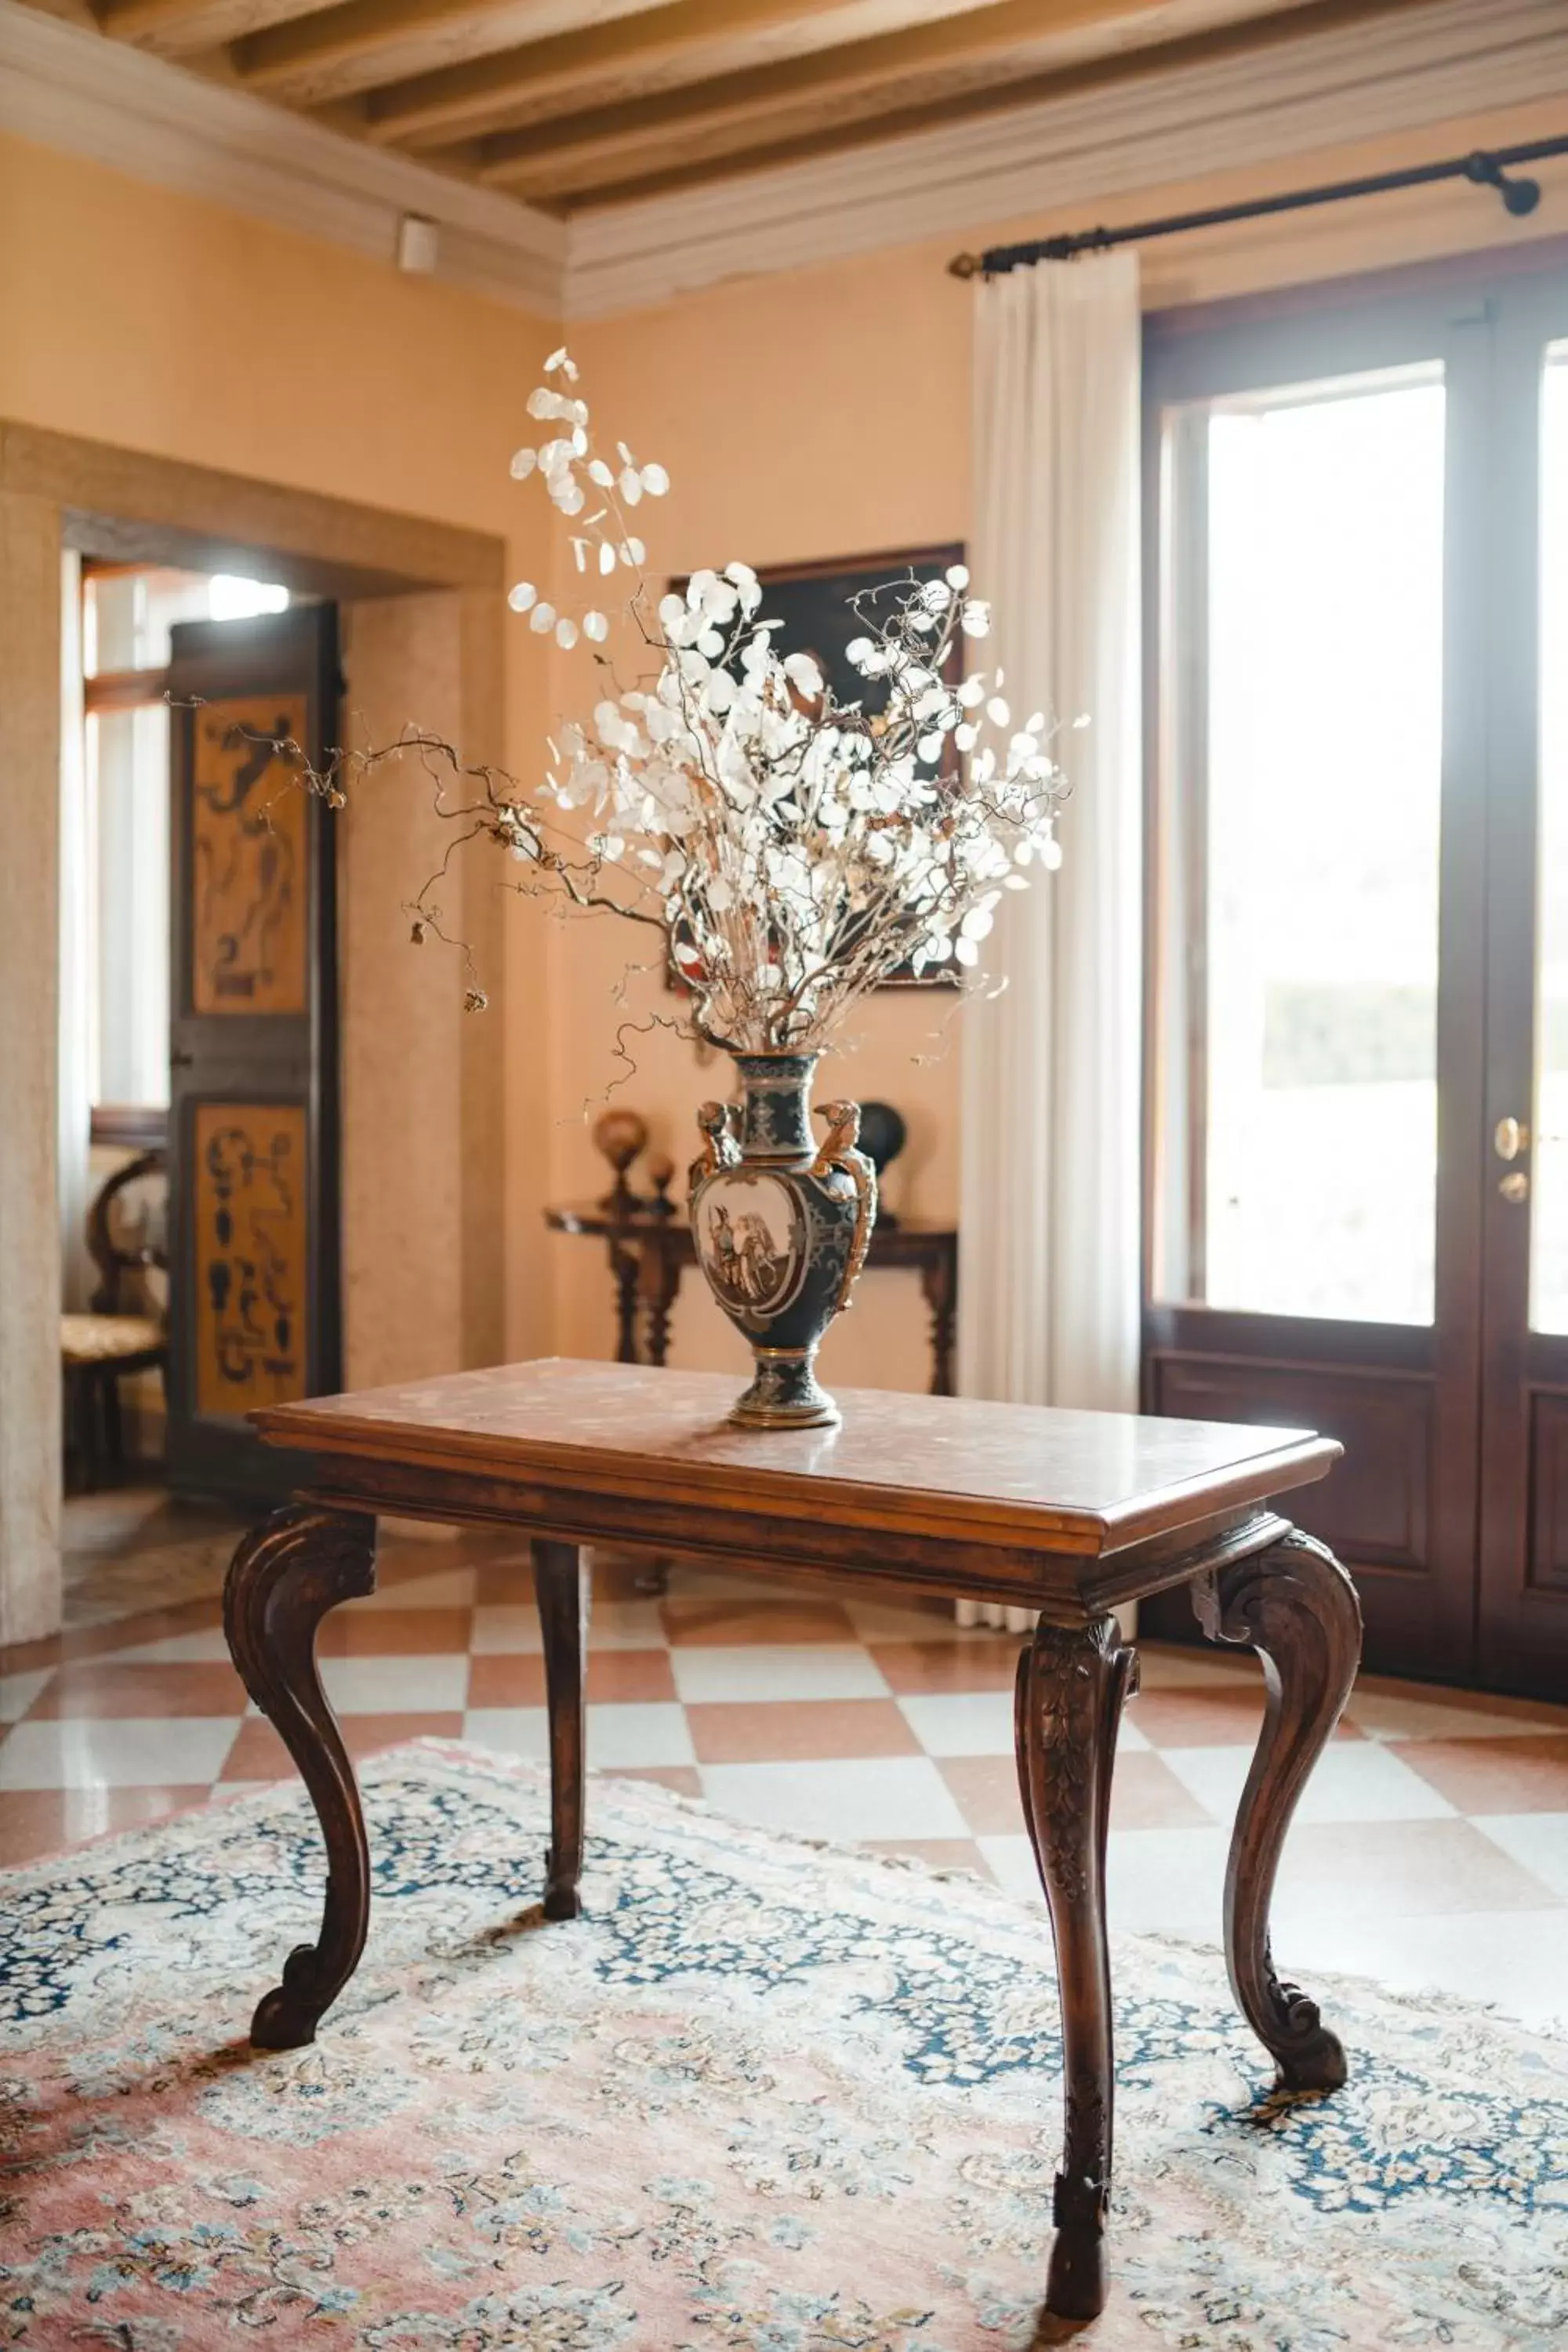 Decorative detail, Seating Area in Villa Stecchini